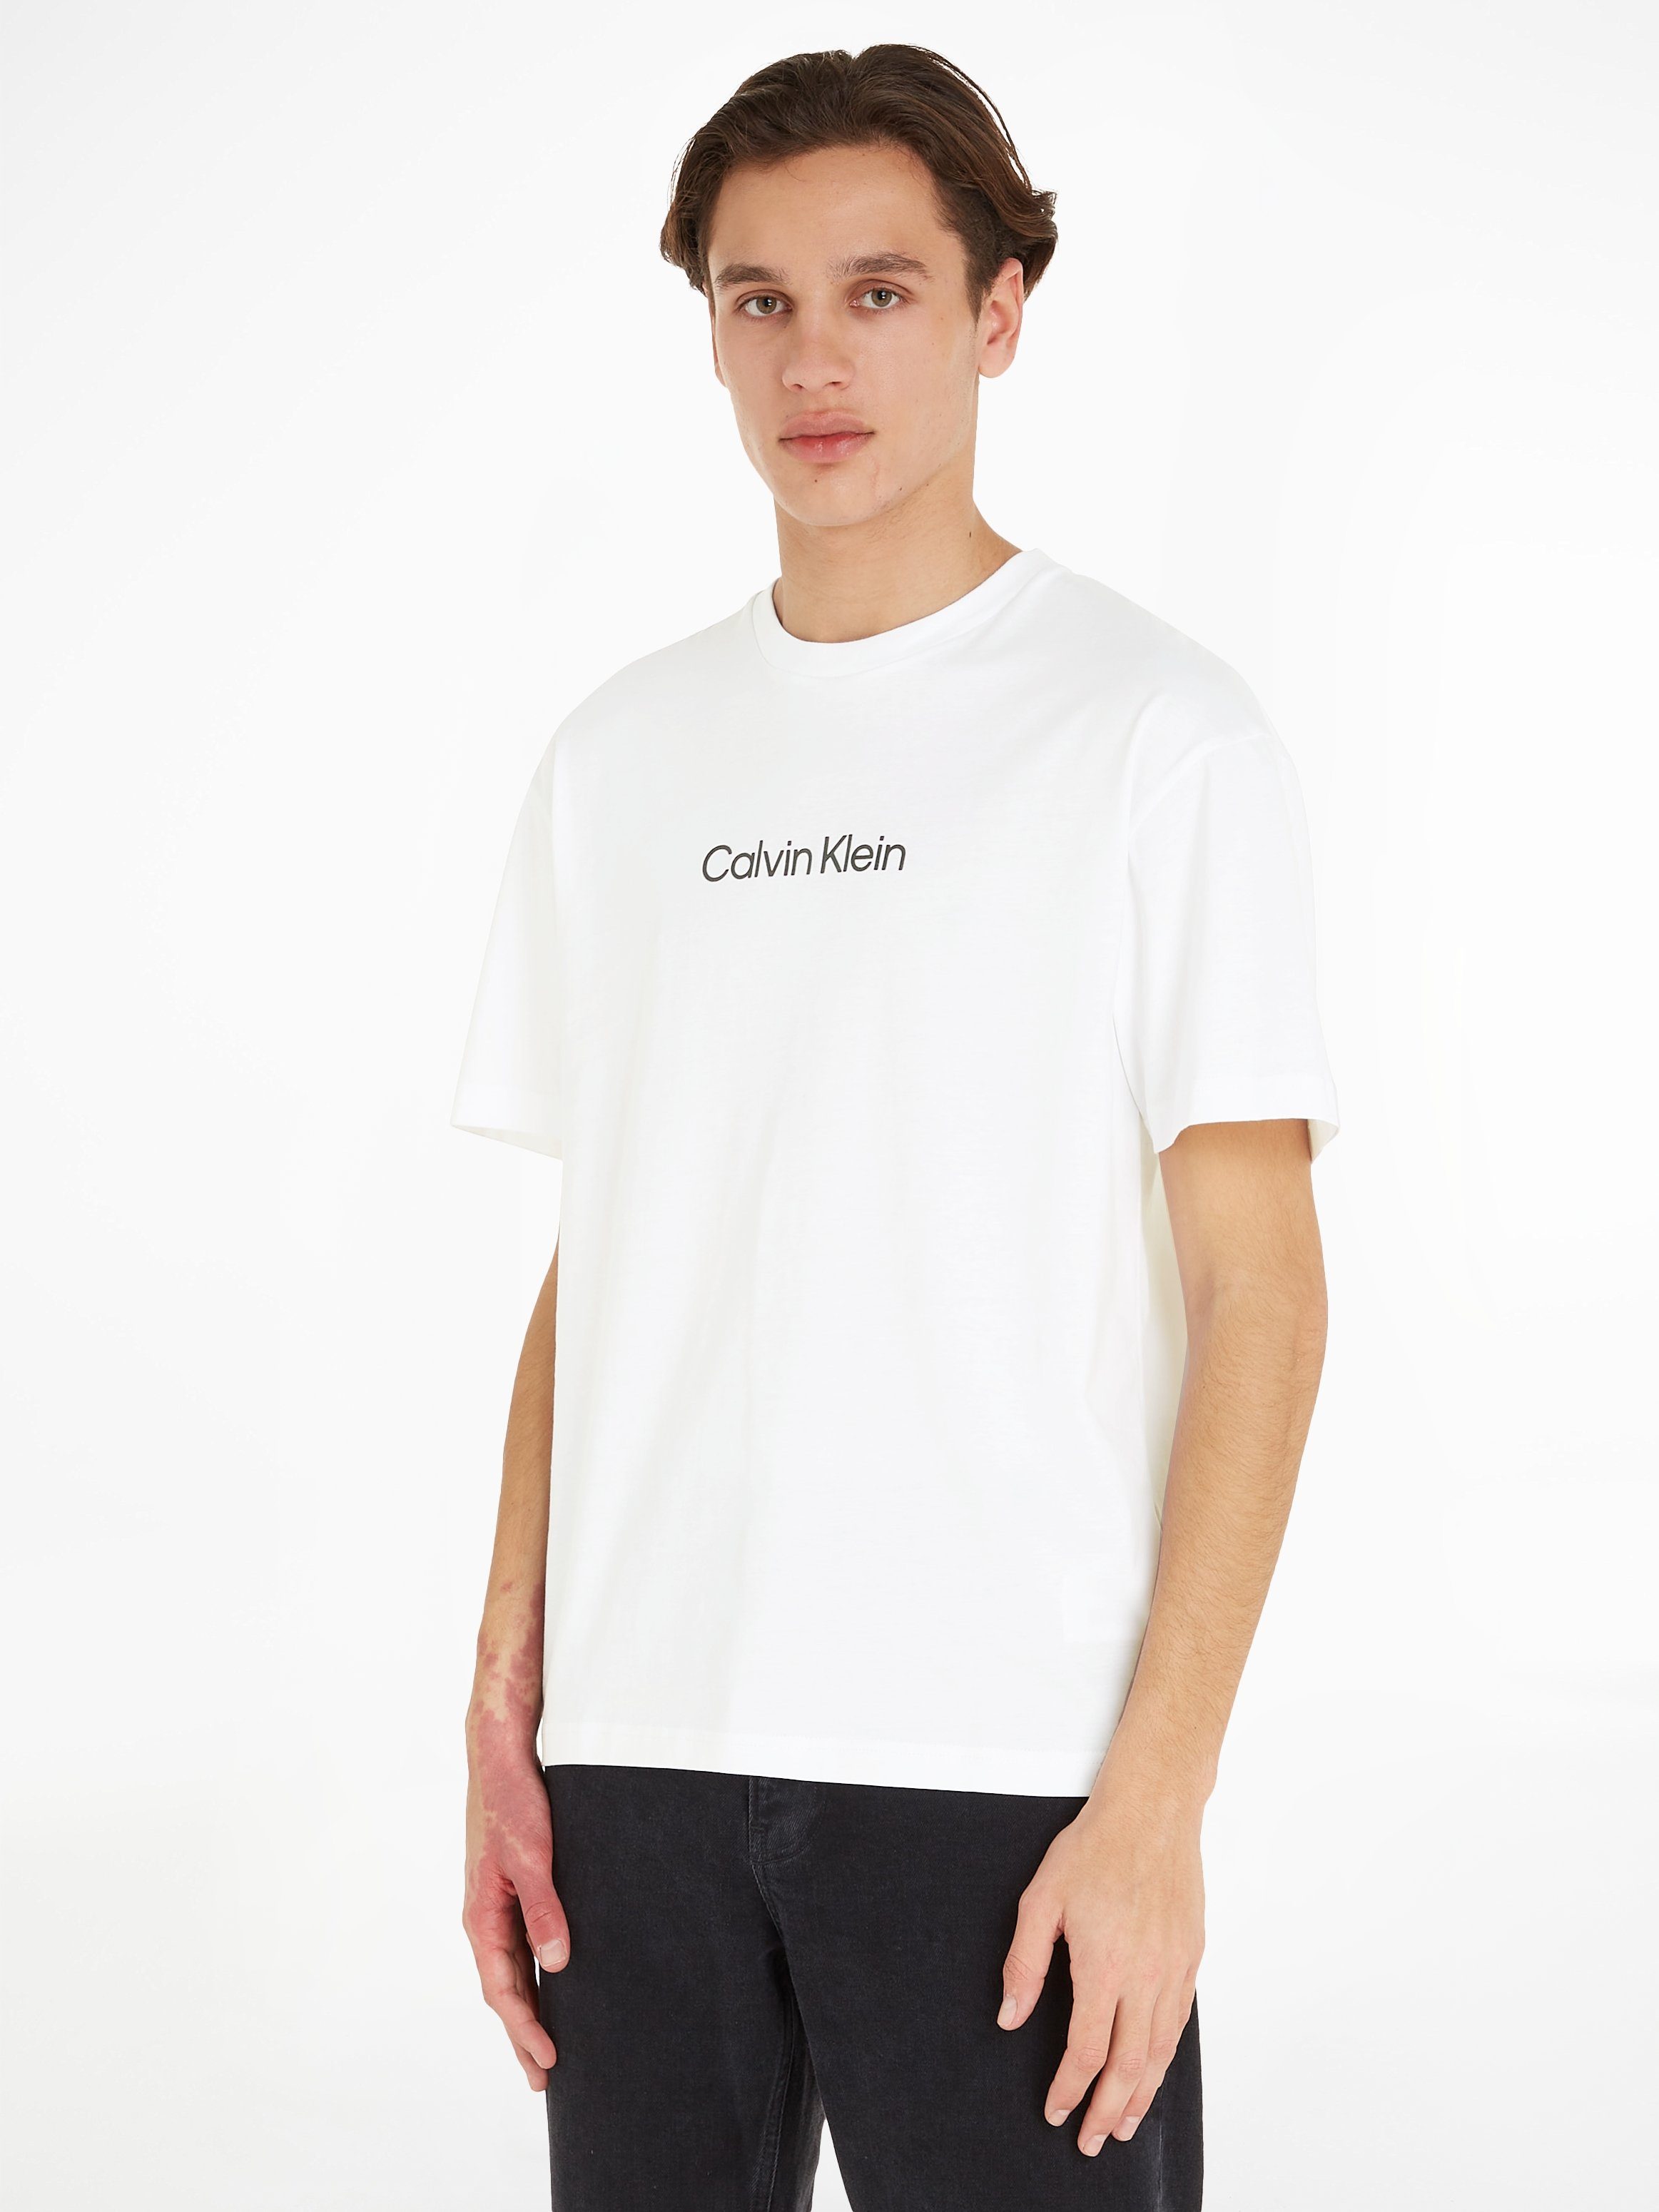 Calvin Klein T-Shirt HERO LOGO COMFORT T-SHIRT mit aufgedrucktem Markenlabel Bright White | T-Shirts